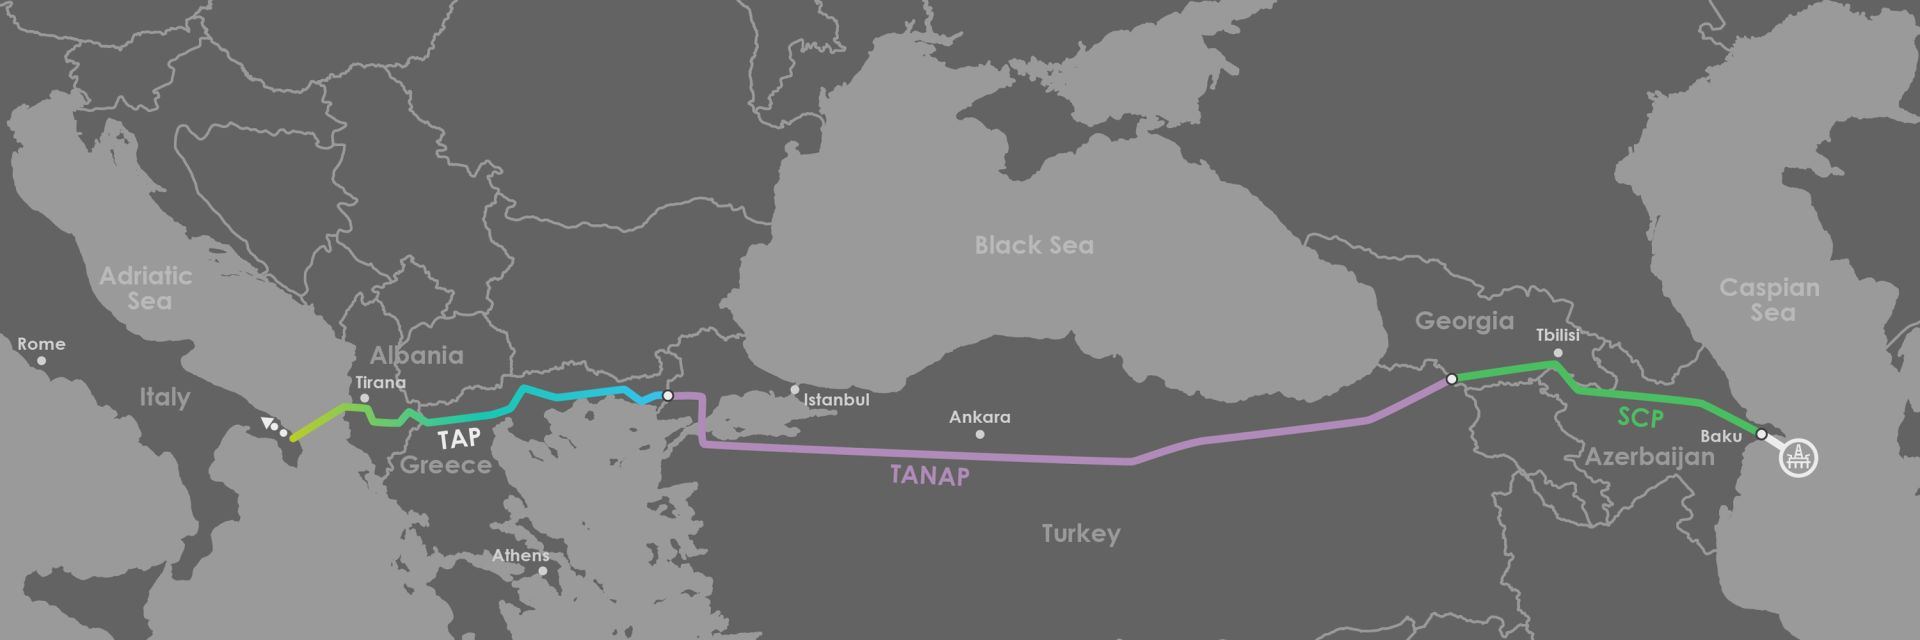 Азербайджан увеличил экспорт задекларированного газа - ГТК